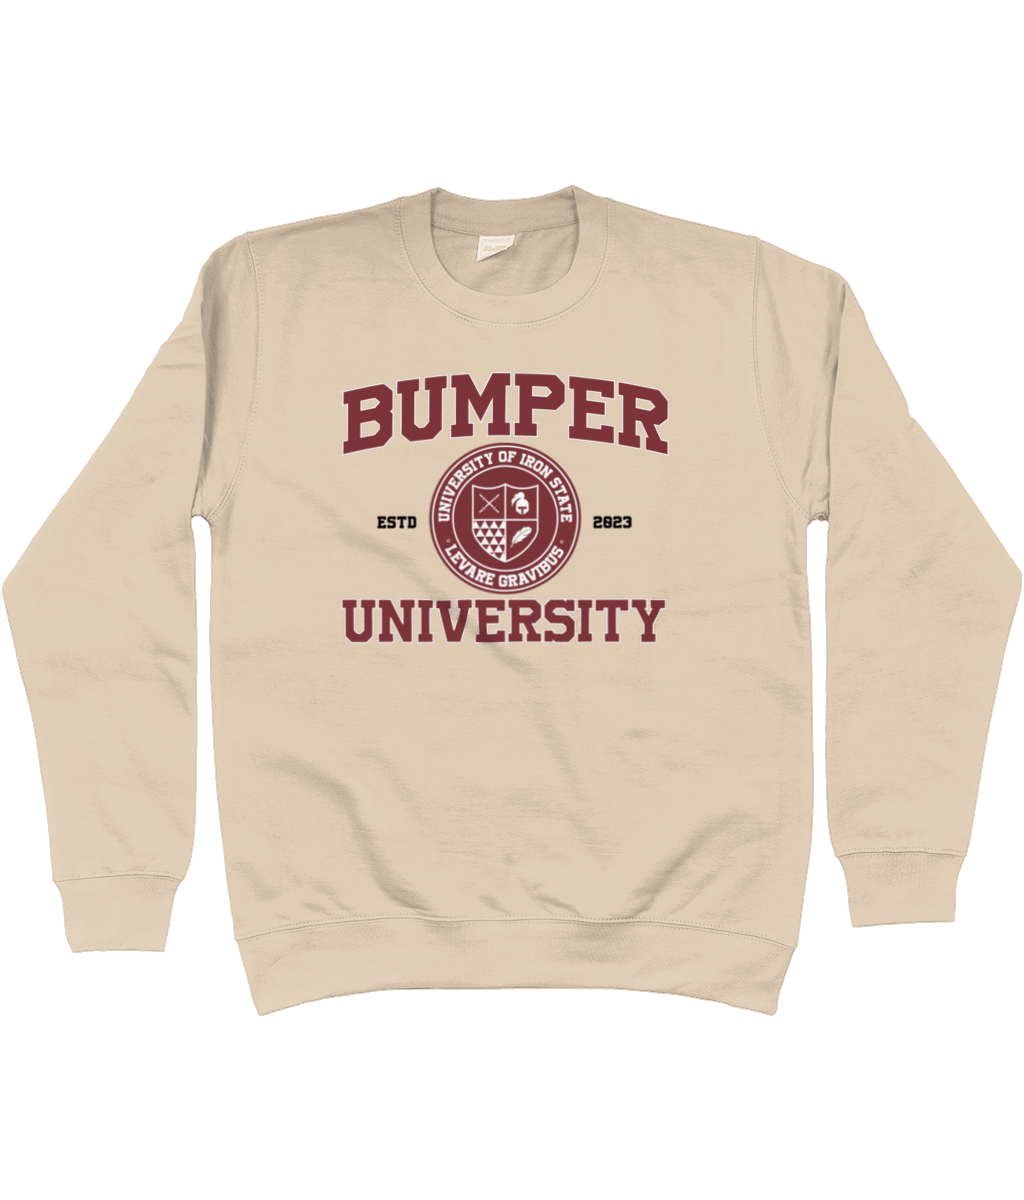 Bumper crest jumper - Bumper uni